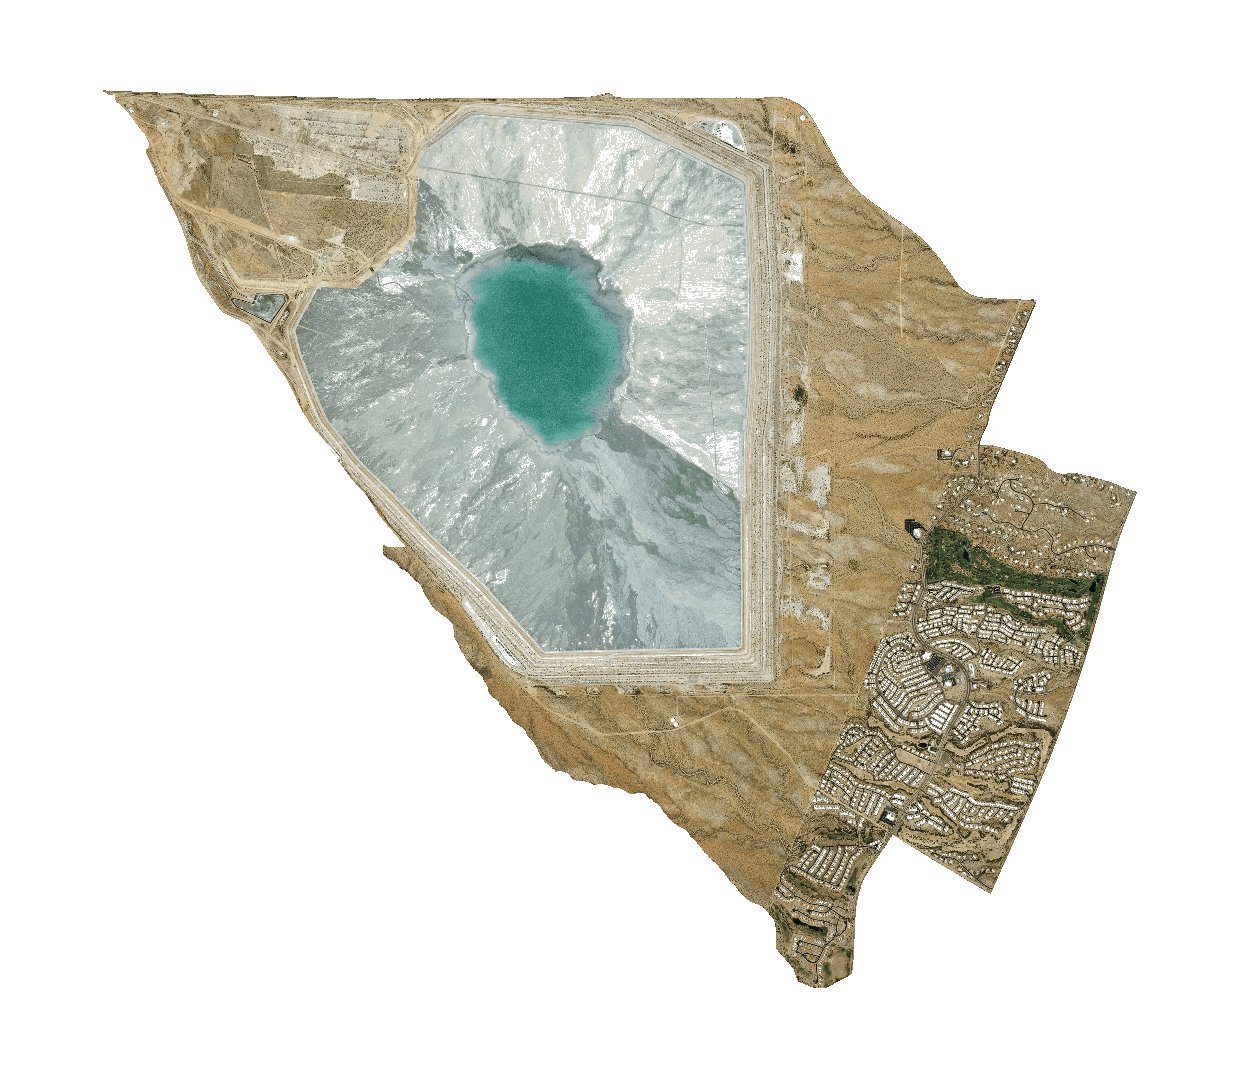 亚利桑那州皮马县43.28号人口普查区的卫星照片